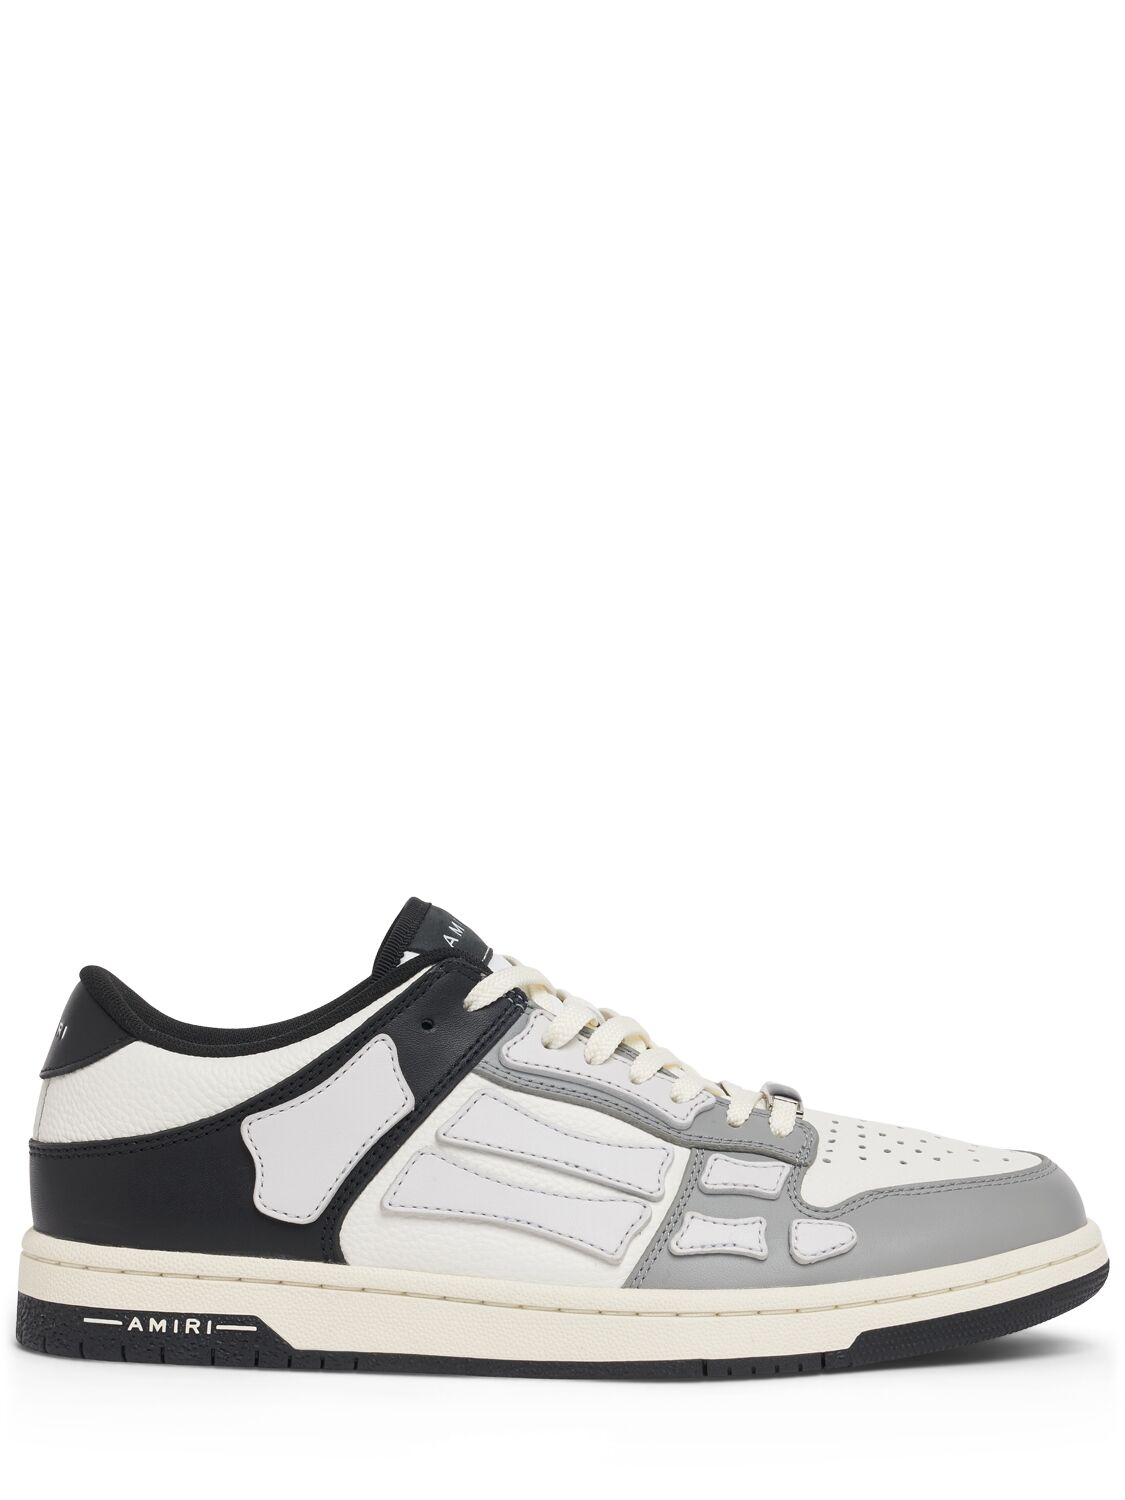 Amiri Two-tone Skel Top Low Sneakers In Black/white/gre